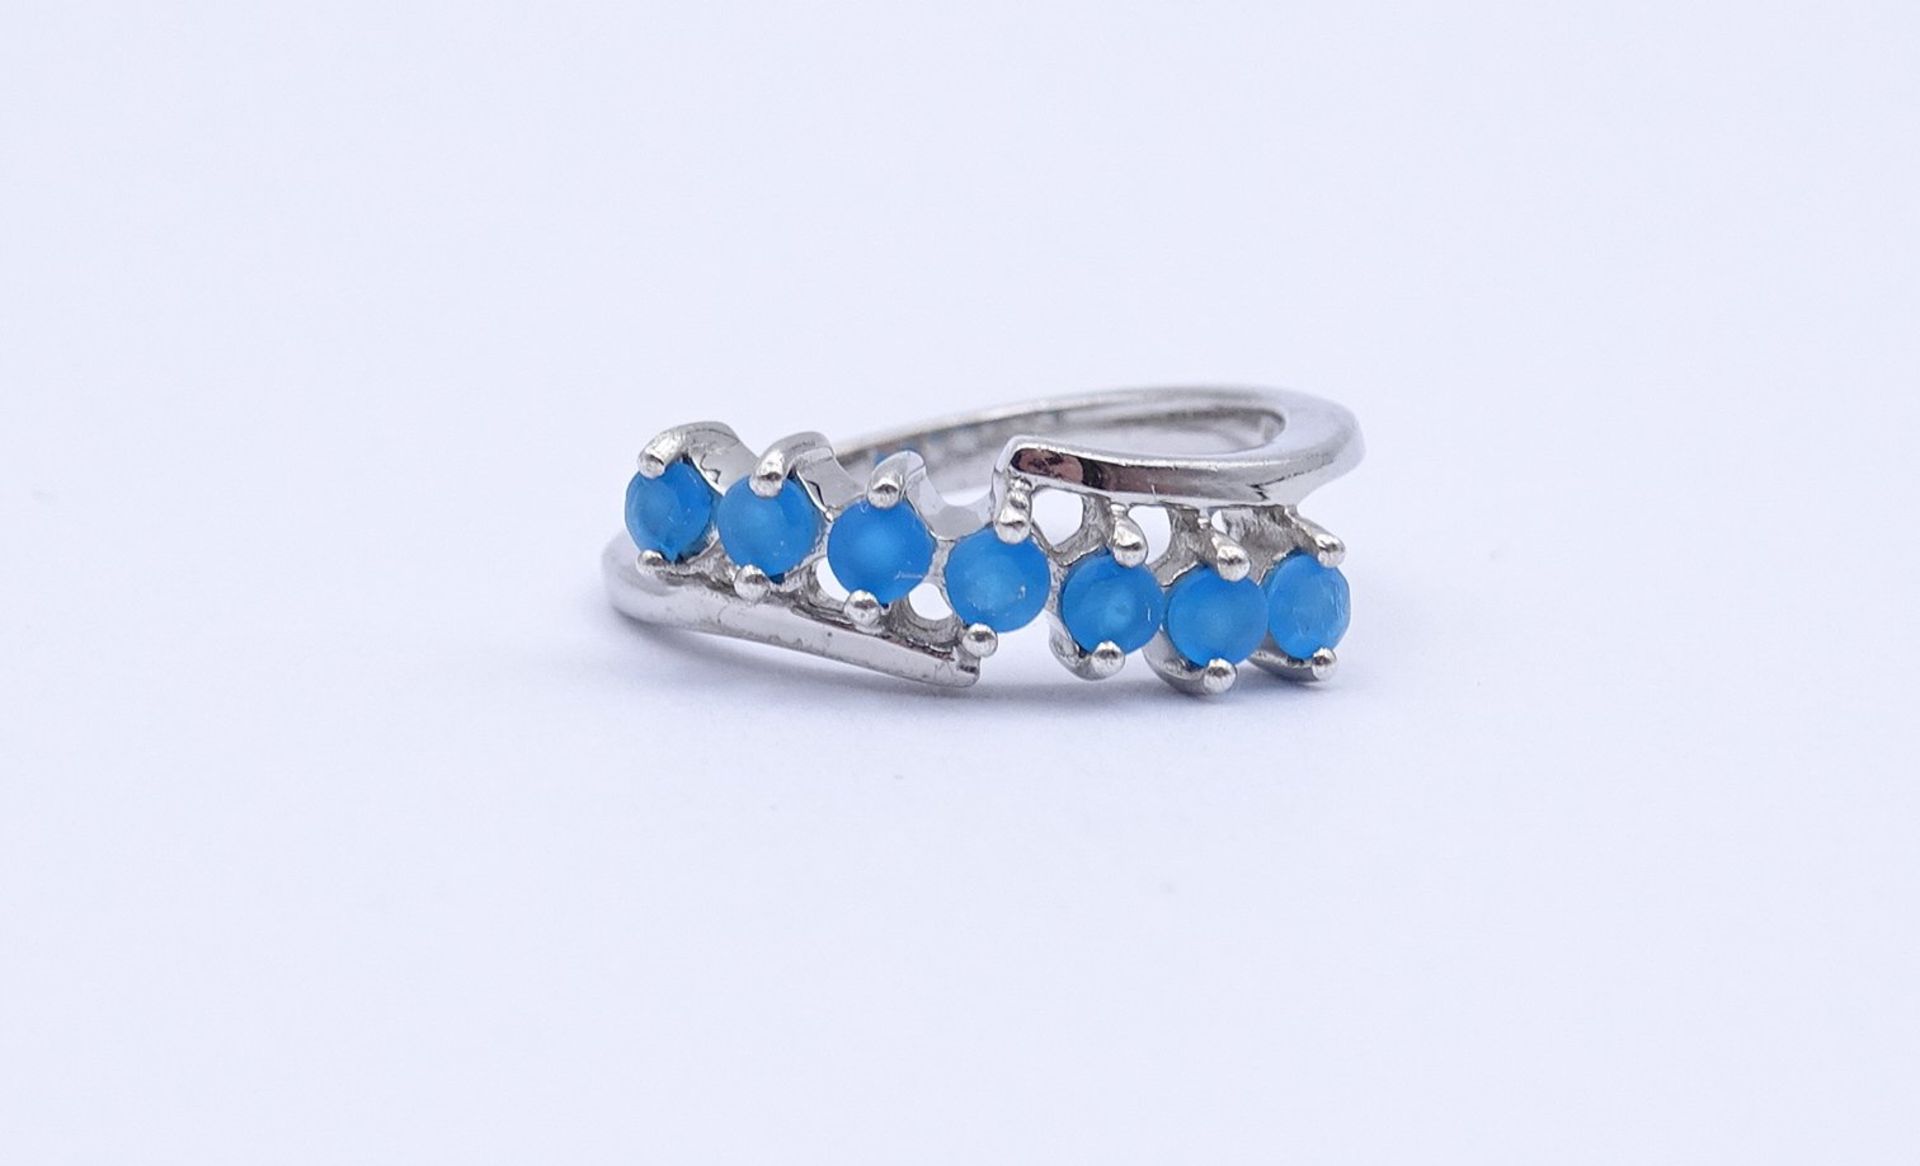 Silber Ring mit rund facc. blauen Steinen, 0.925, 2,5g., RG 50